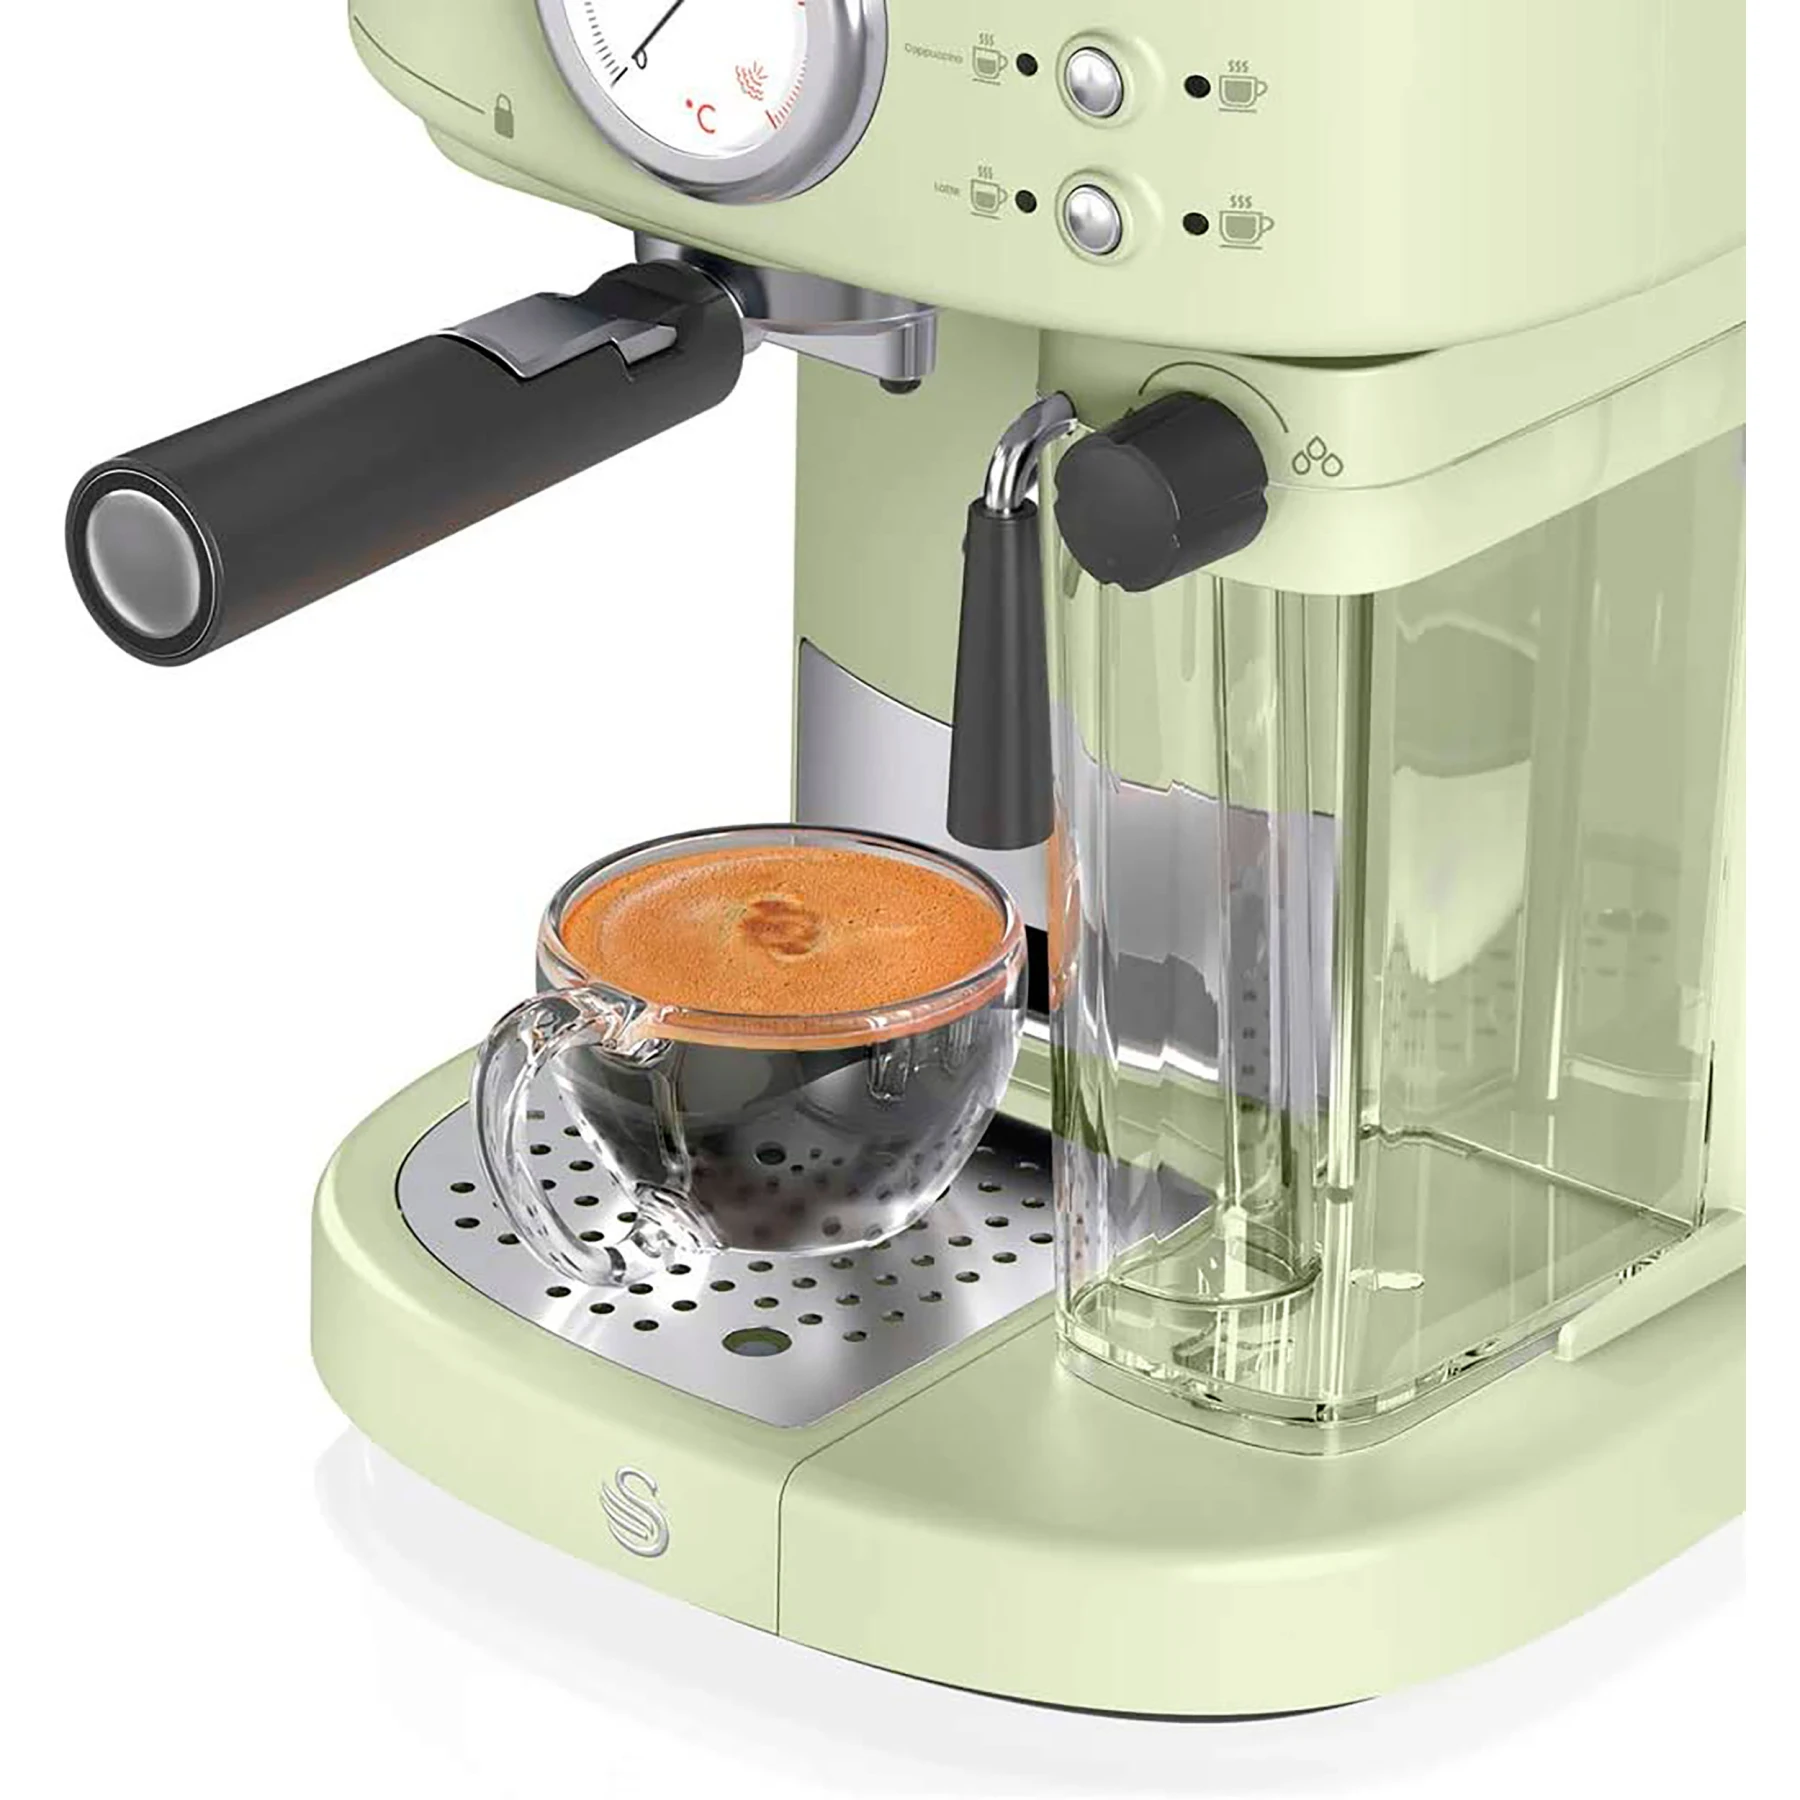 Swan Máquina de café espresso Retro Pump, rosa, 15 bares de presión,  espumador de leche, tanque de 1,2 L, SK22110PN : : Hogar y cocina